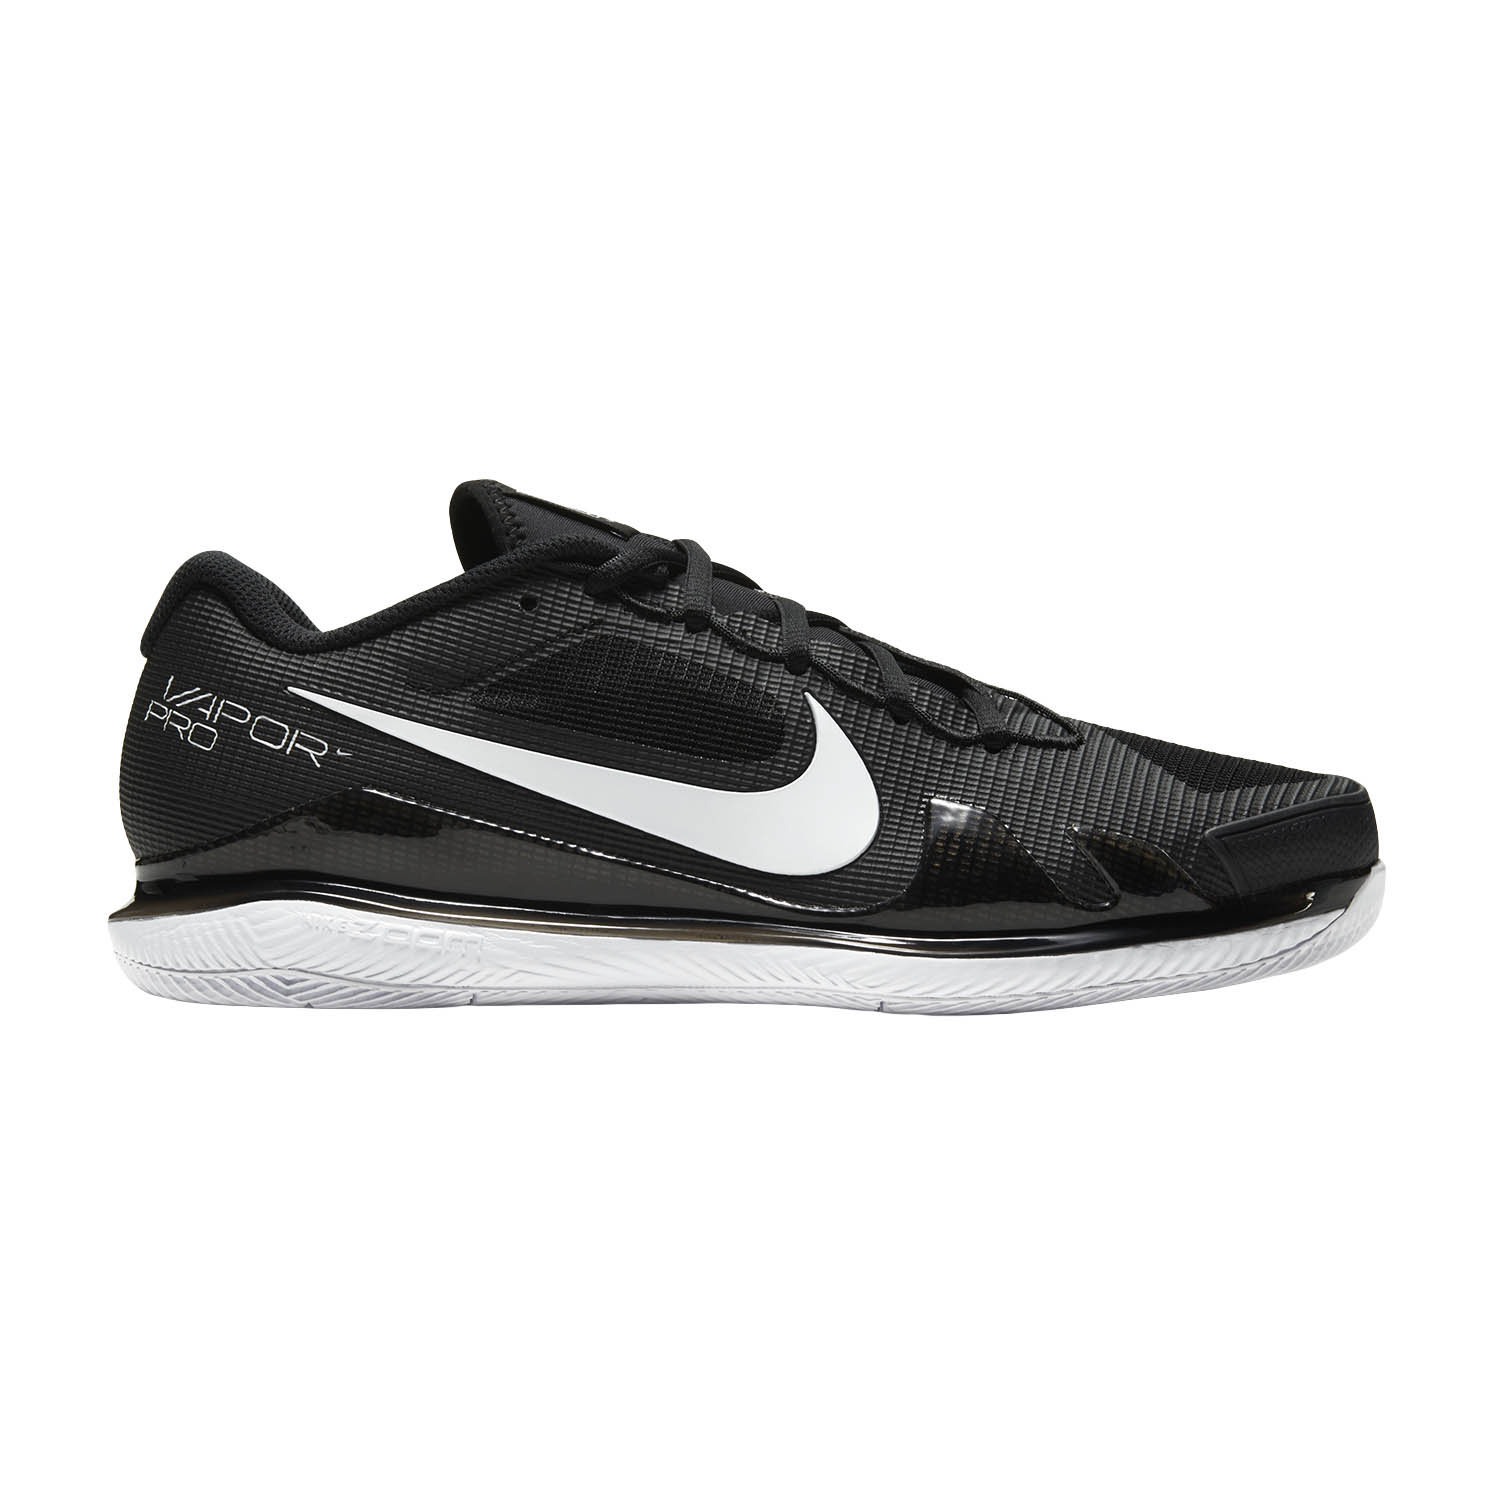 Nike Air Pro Zapatillas de Tenis Hombre - Black